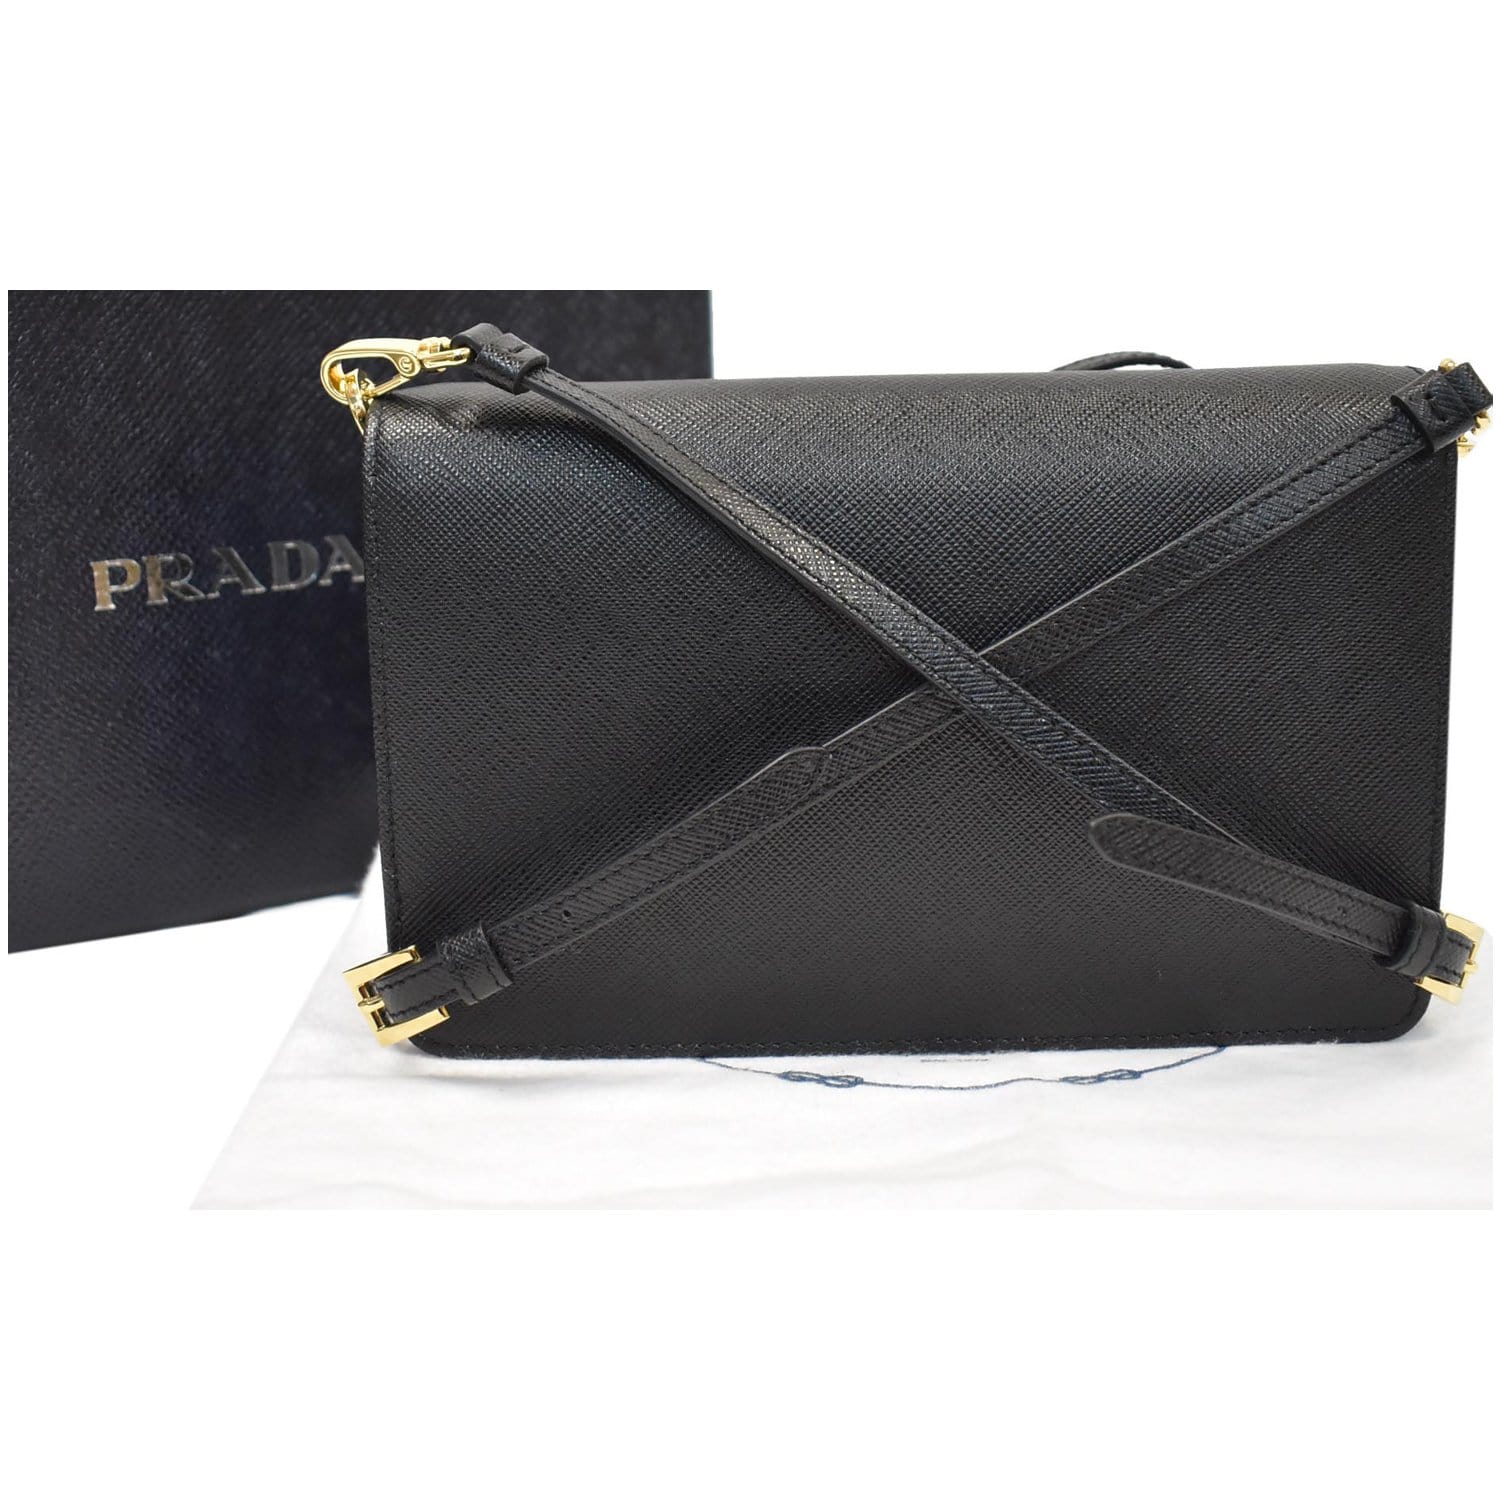 Prada Saffiano Leather Bag Mini Black in Saffiano Leather with